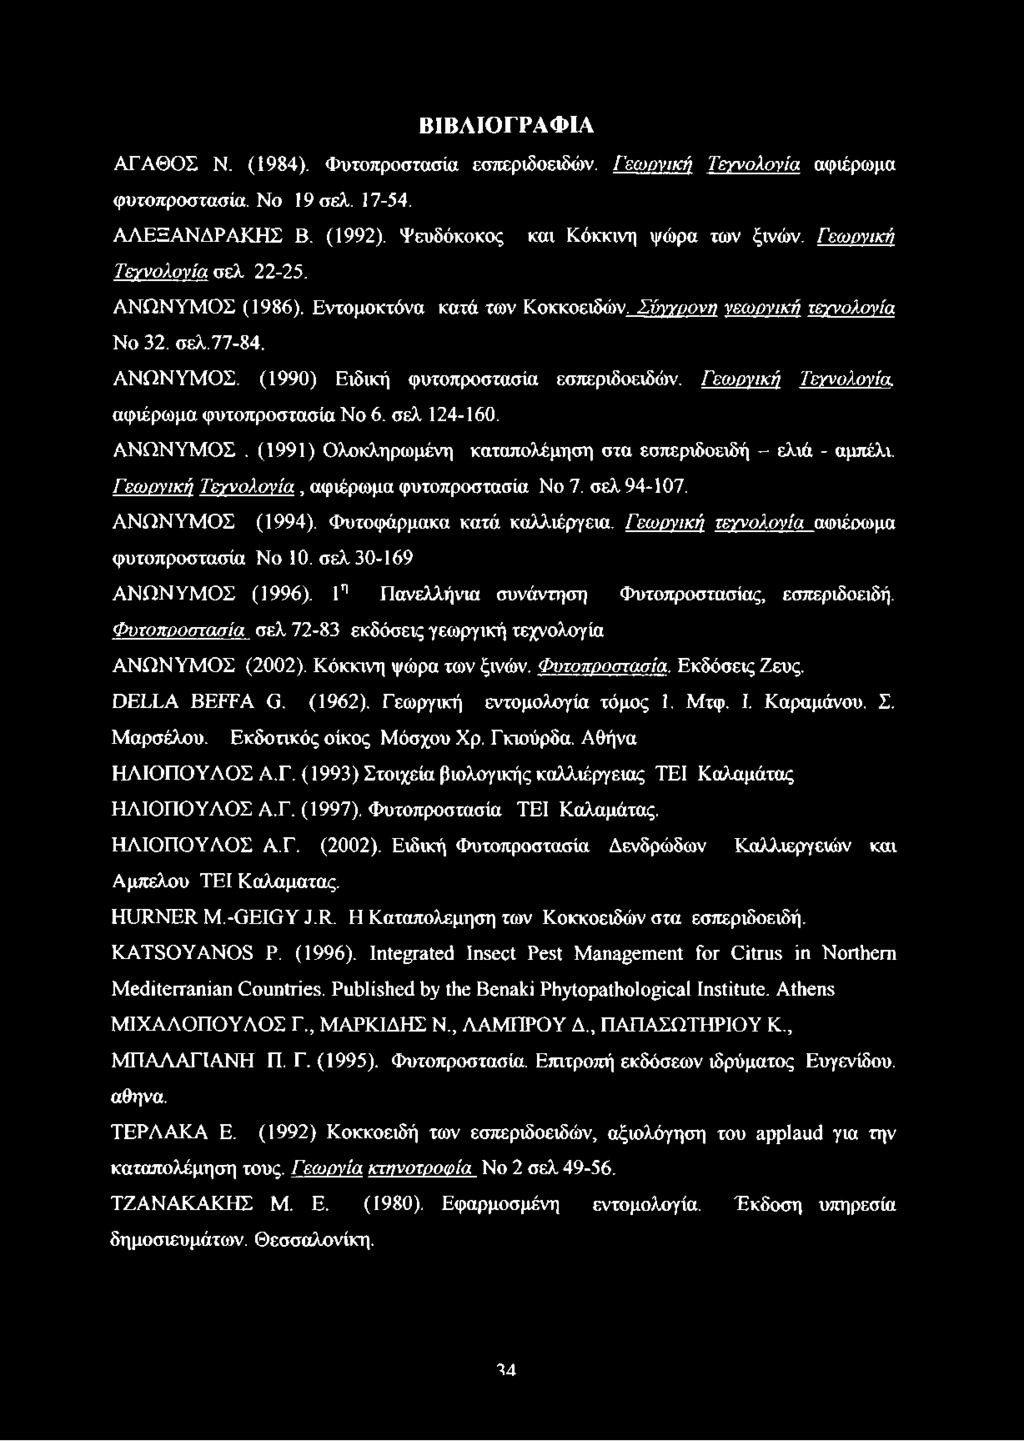 Γεωργική Τεγνολονία. αφιέρωμα φυτοπροστασία No 6. σελ 124-160. ΑΝΩΝΥΜΟΣ. (1991) Ολοκληρωμένη καταπολέμηση στα εσπεριδοειδή - ελιά - αμπέλι. Γεωργική Τεγνολονία, αφιέρωμα φυτοπροστασία No 7.